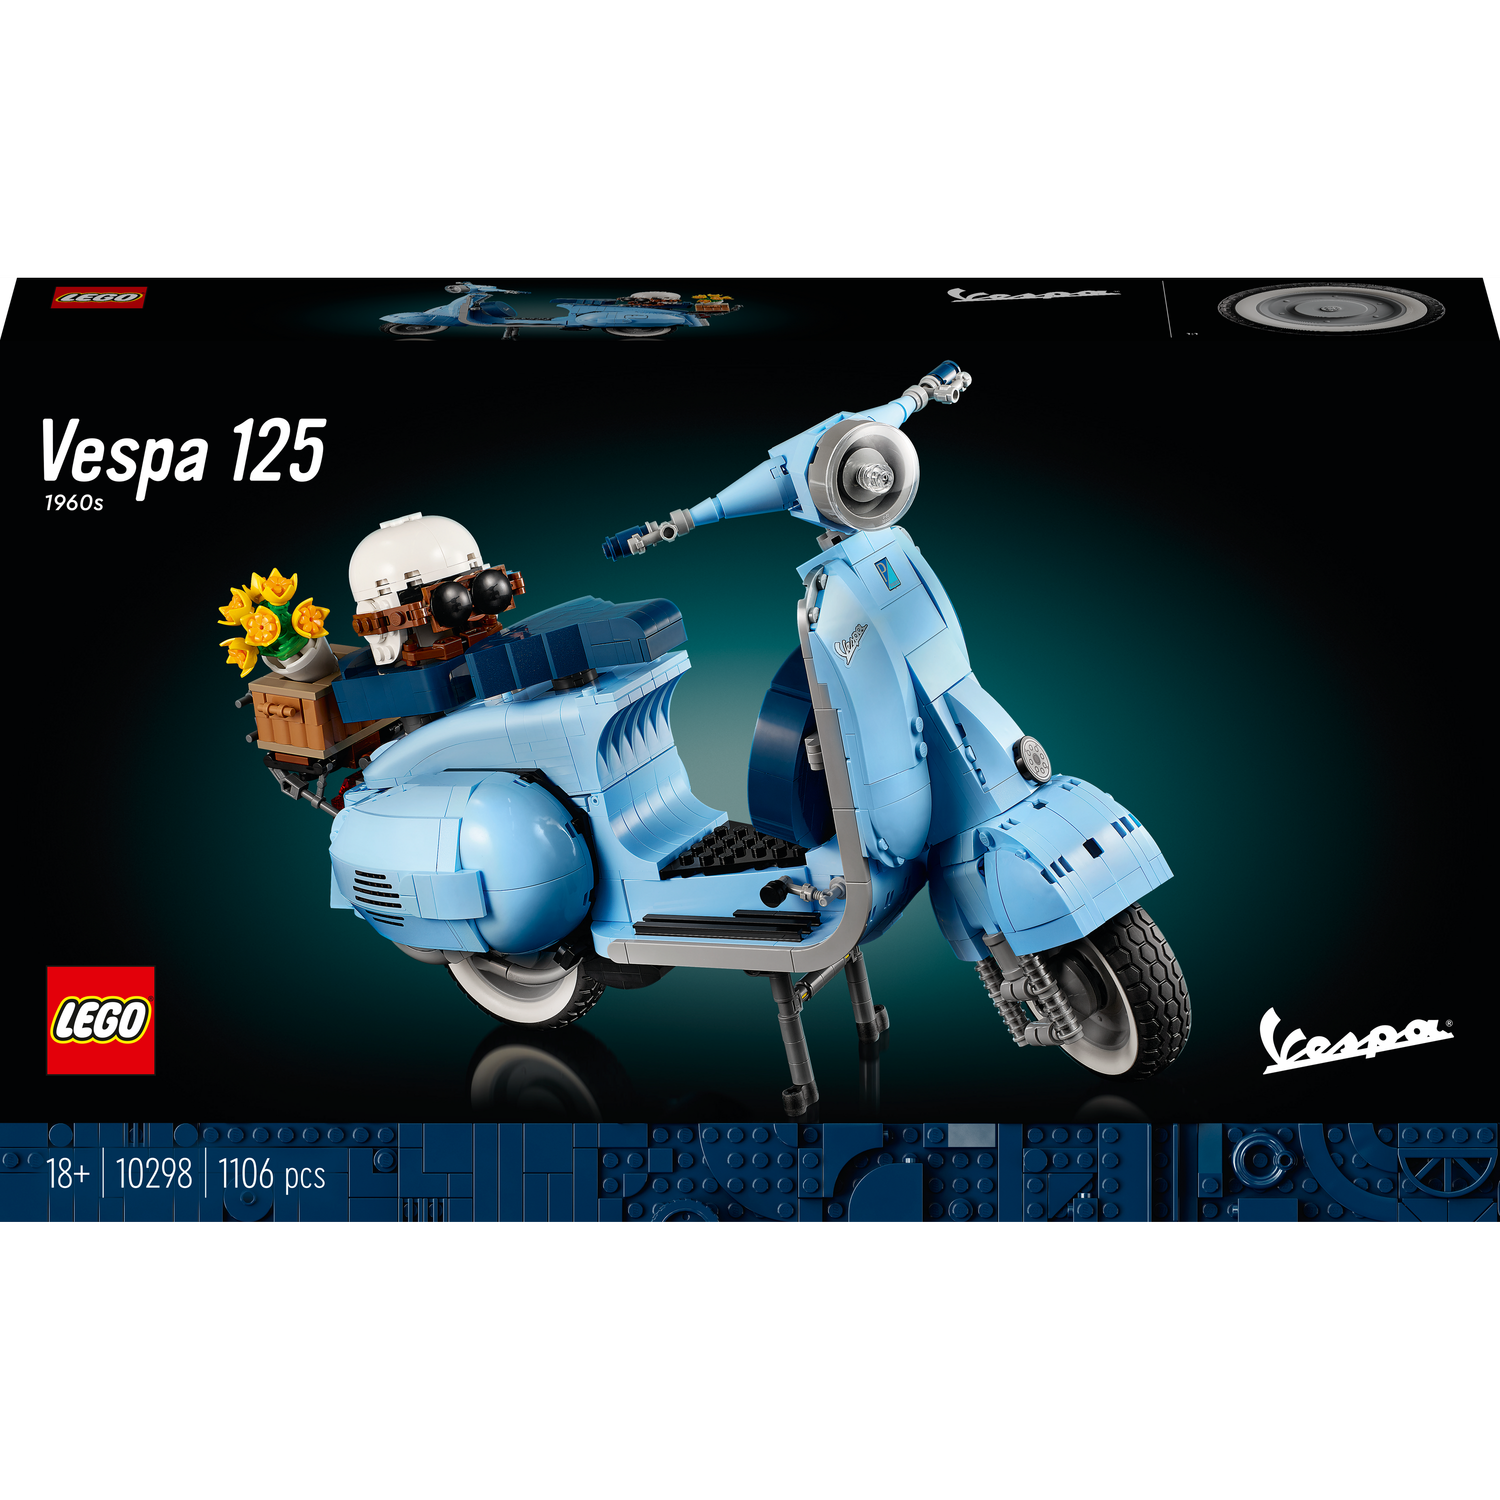 Конструктор LEGO Creator expert Vespa 125, 1106 деталей (10298) - фото 1